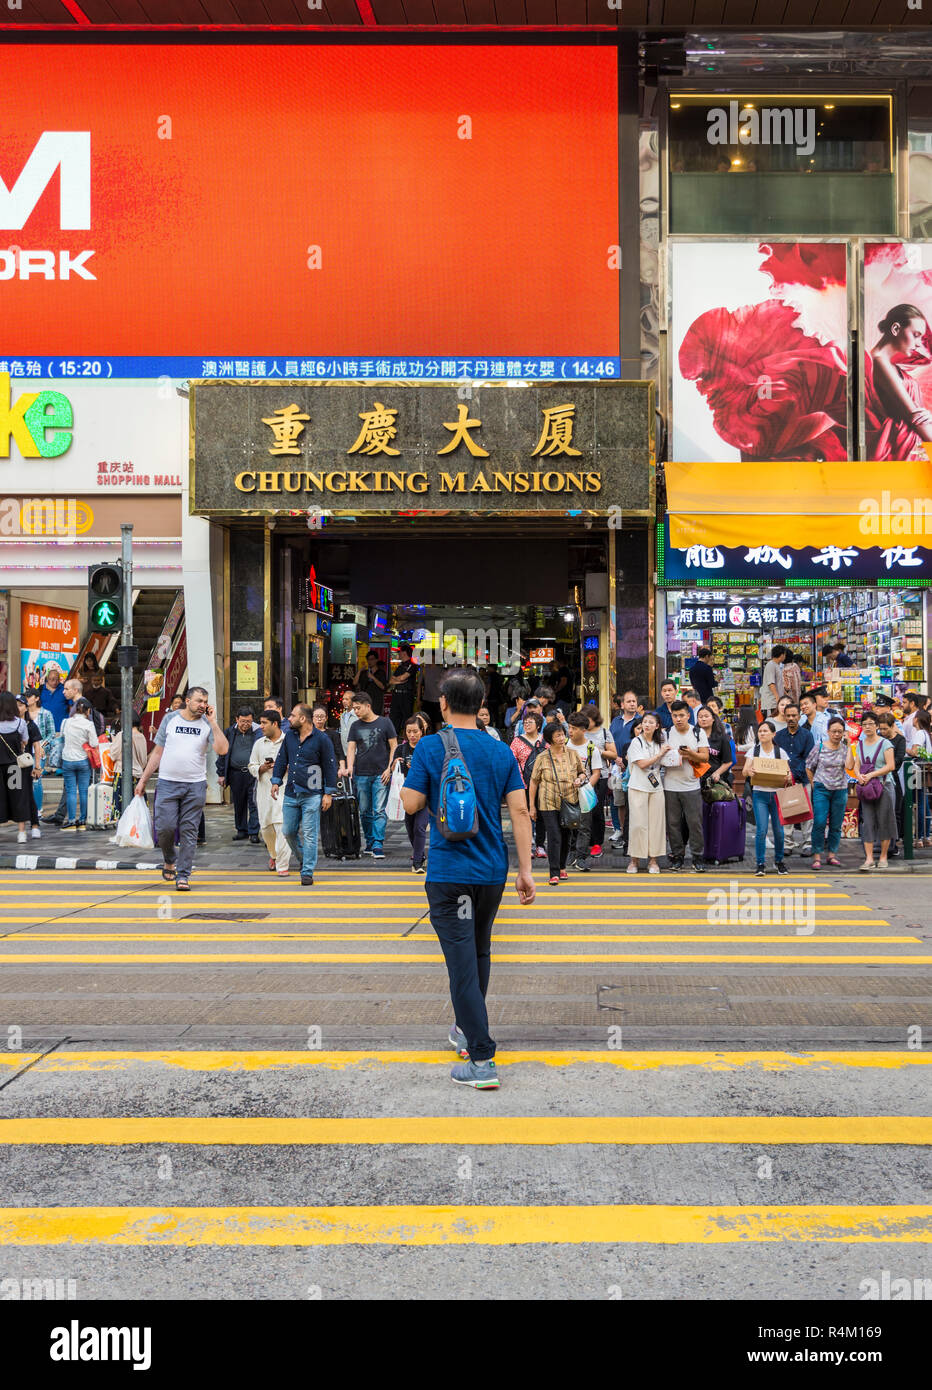 El hombre cruzando la calle y la gente esperando en el cruce peatonal fuera Chungking mansiones, Nathan Road, Tsim Sha Tsui, Kowloon, Hong Kong Foto de stock